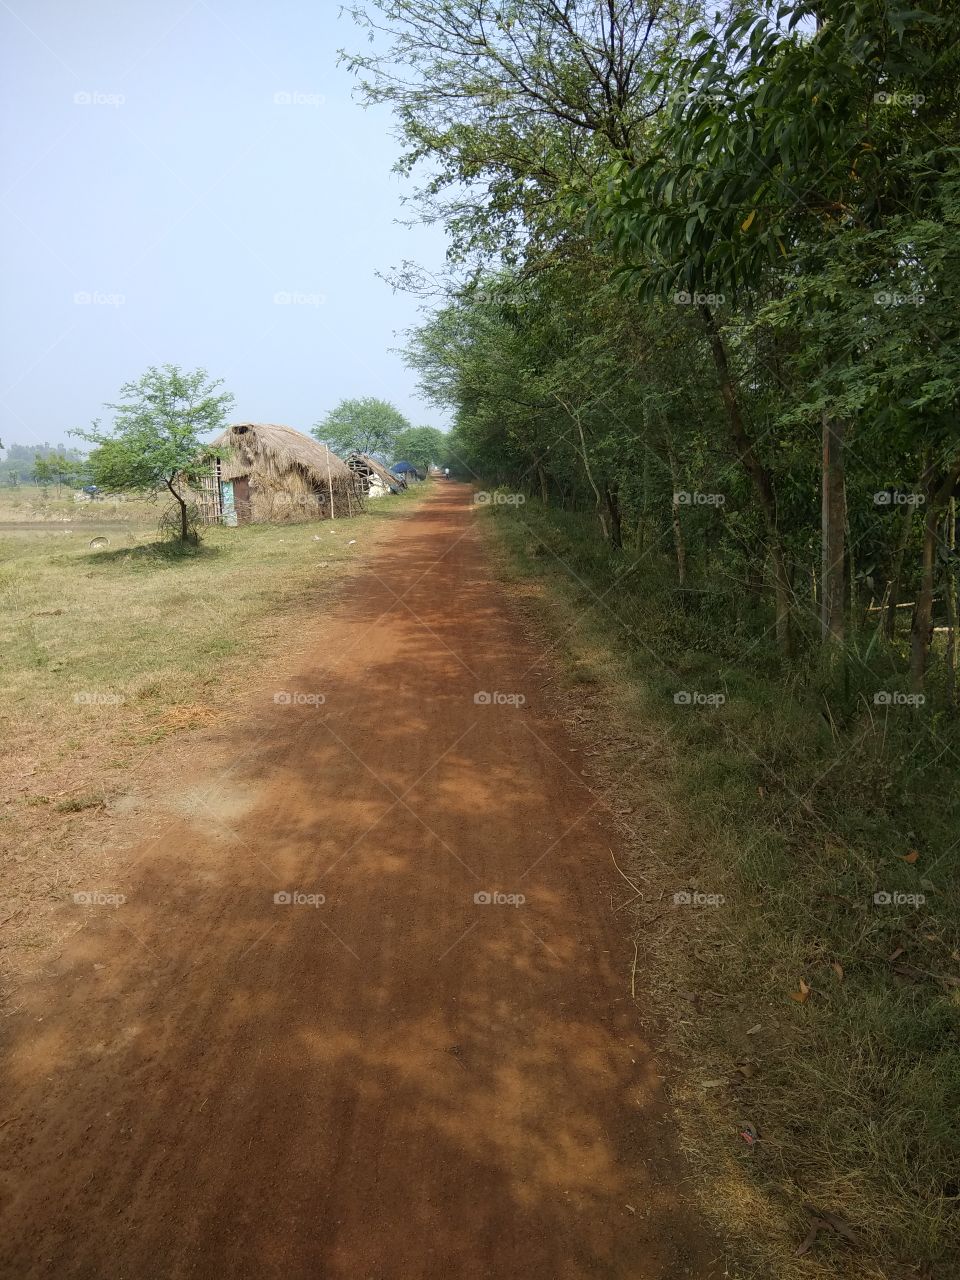 A rural road